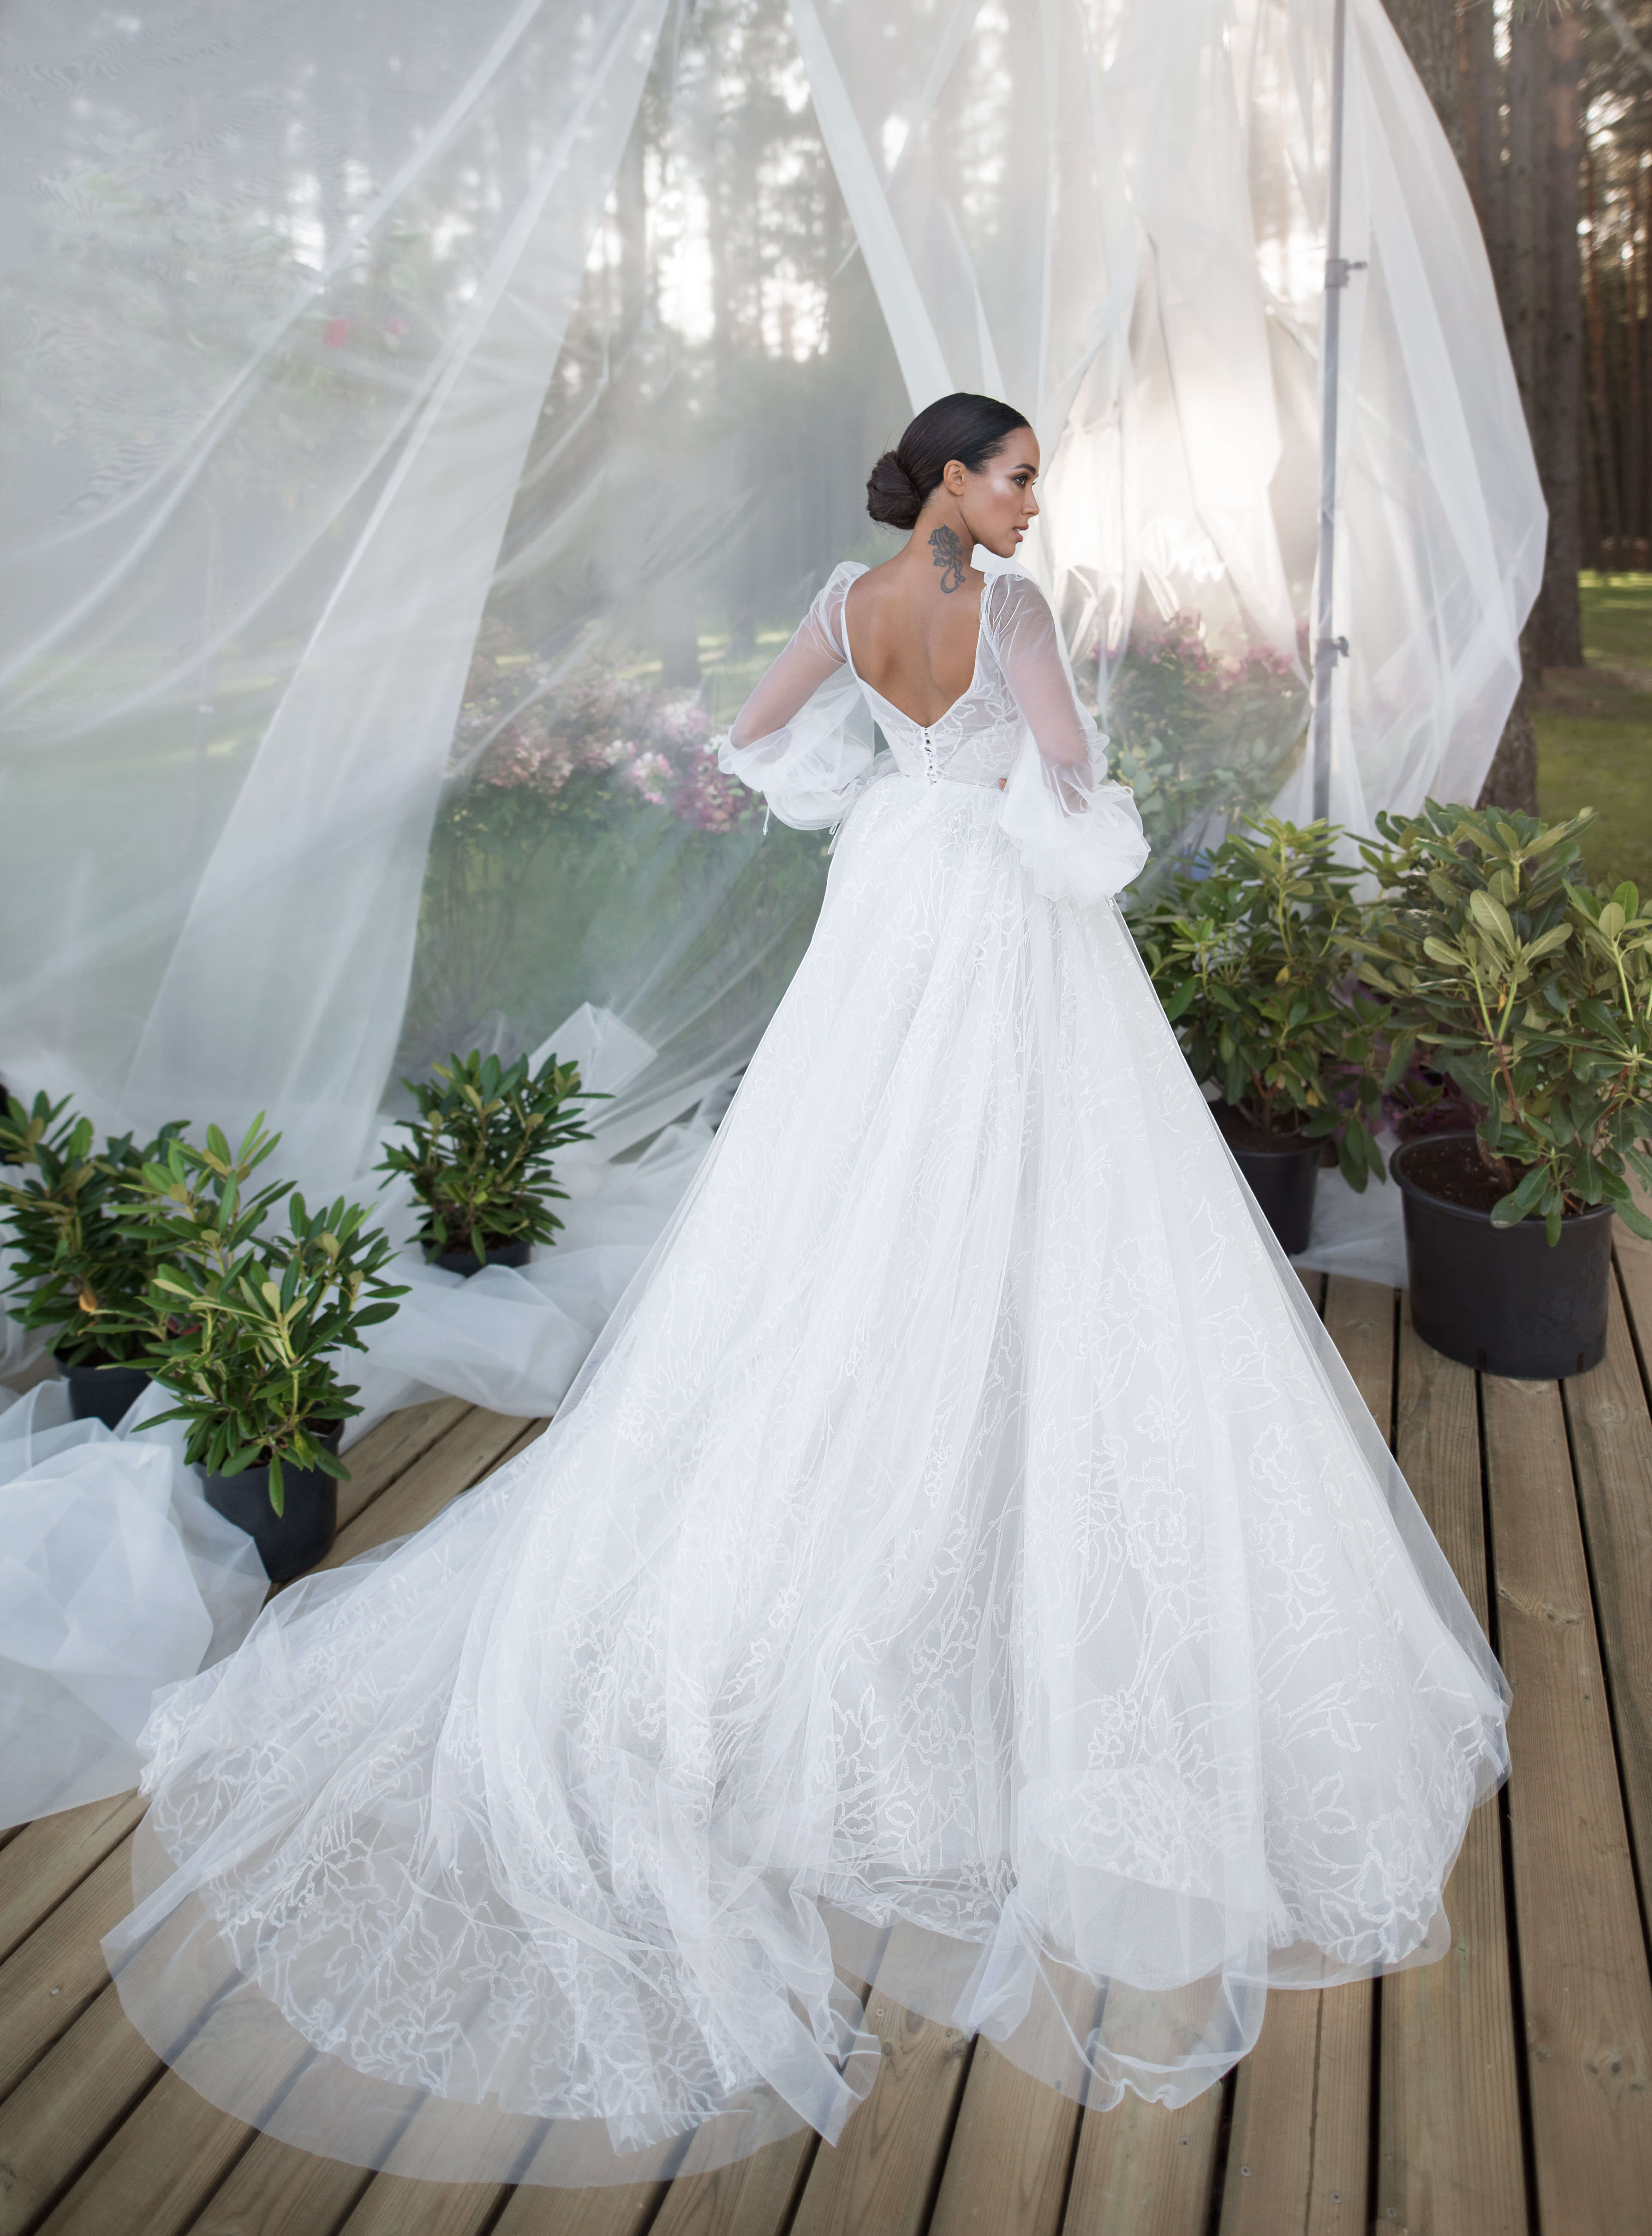 Купить свадебное платье «Миней» Бламмо Биамо из коллекции Нимфа 2020 года в Нижнем Новгороде